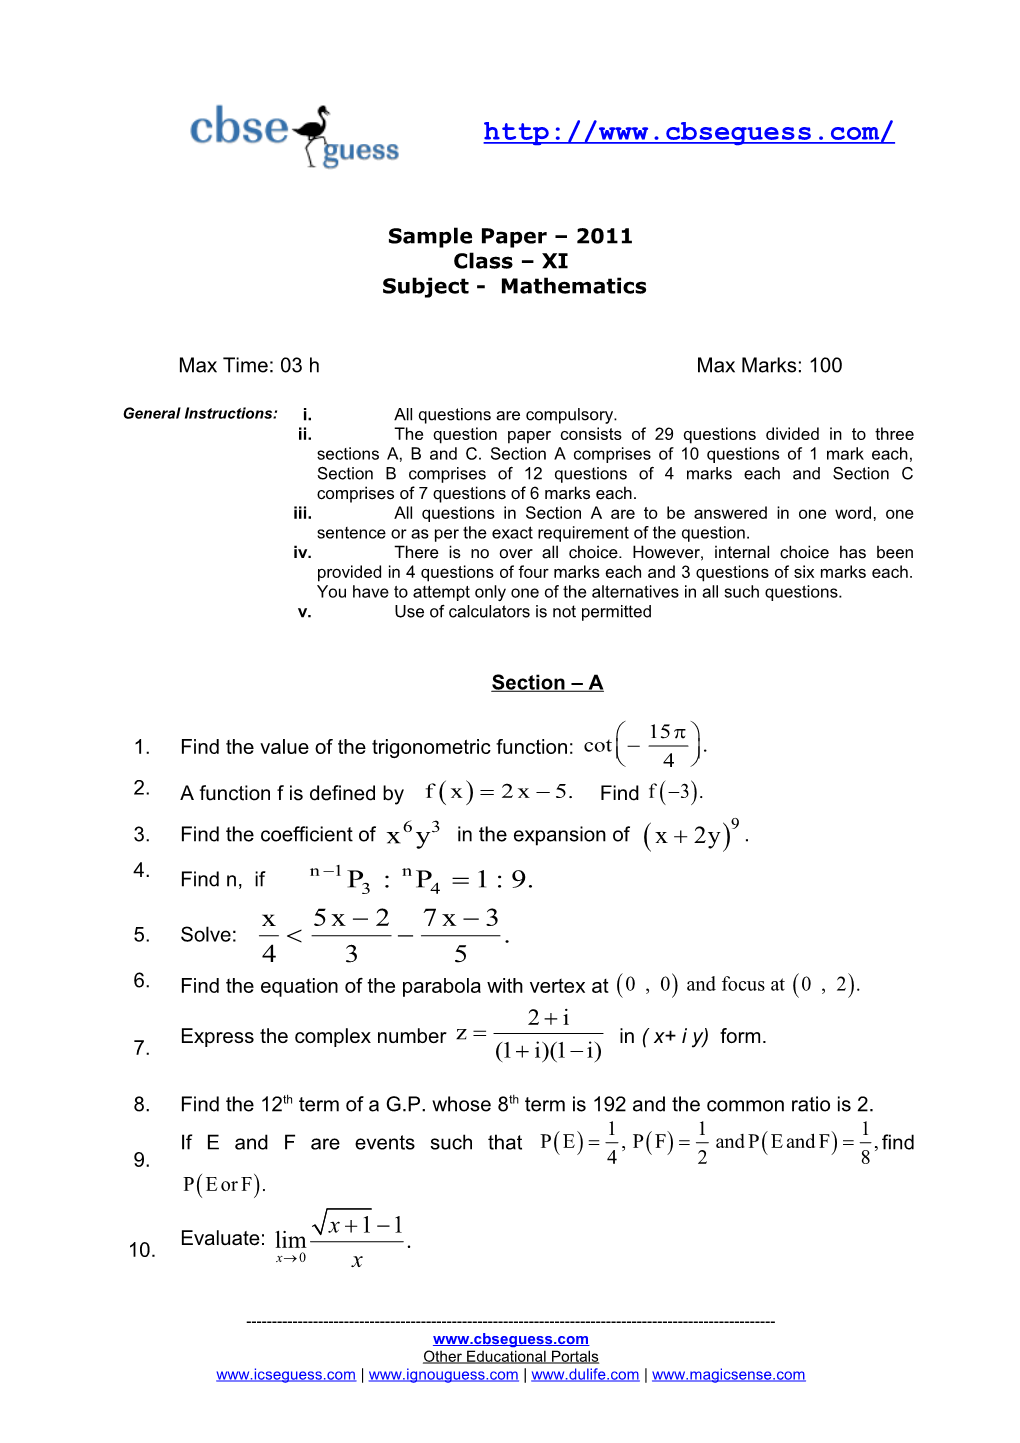 Sample Paper 2011 Class XI Subject - Mathematics